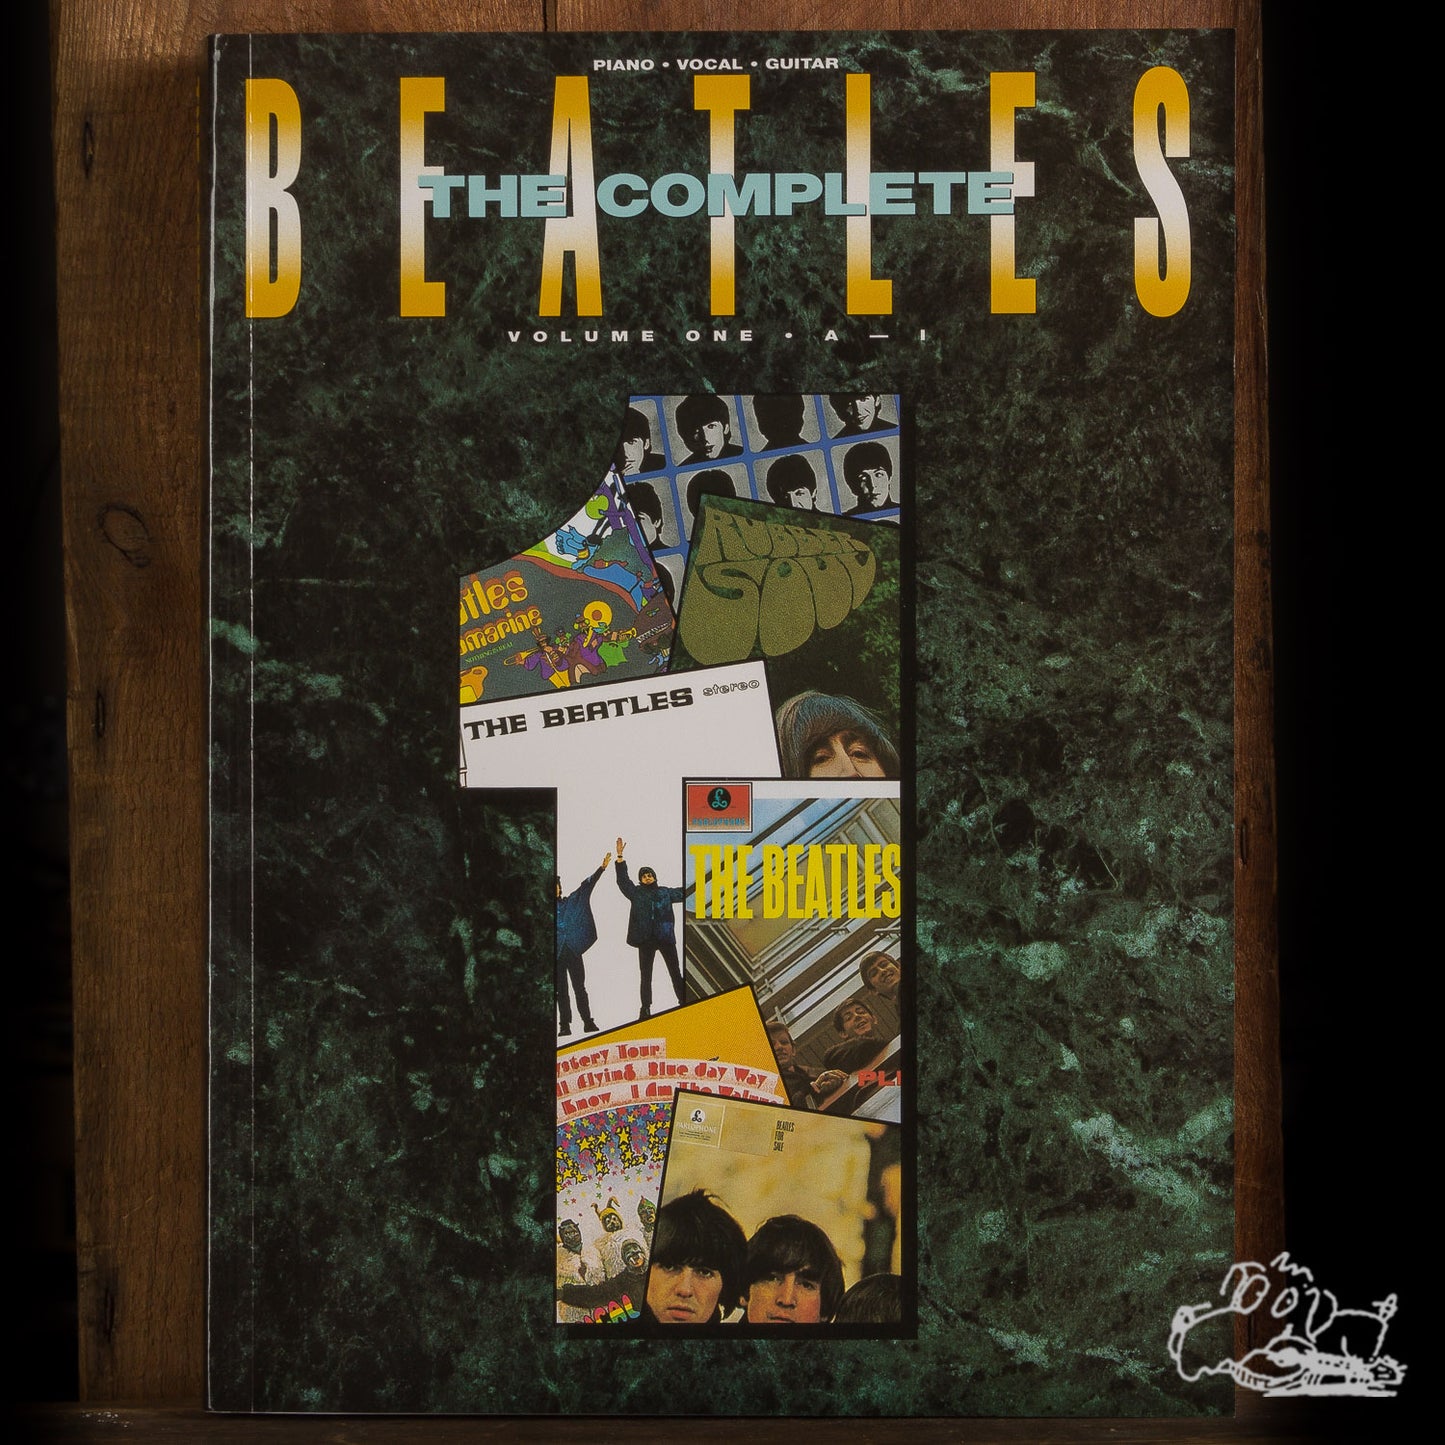 The Complete Beatles Vol. 1 A-I Piano/Vocal/Guitar